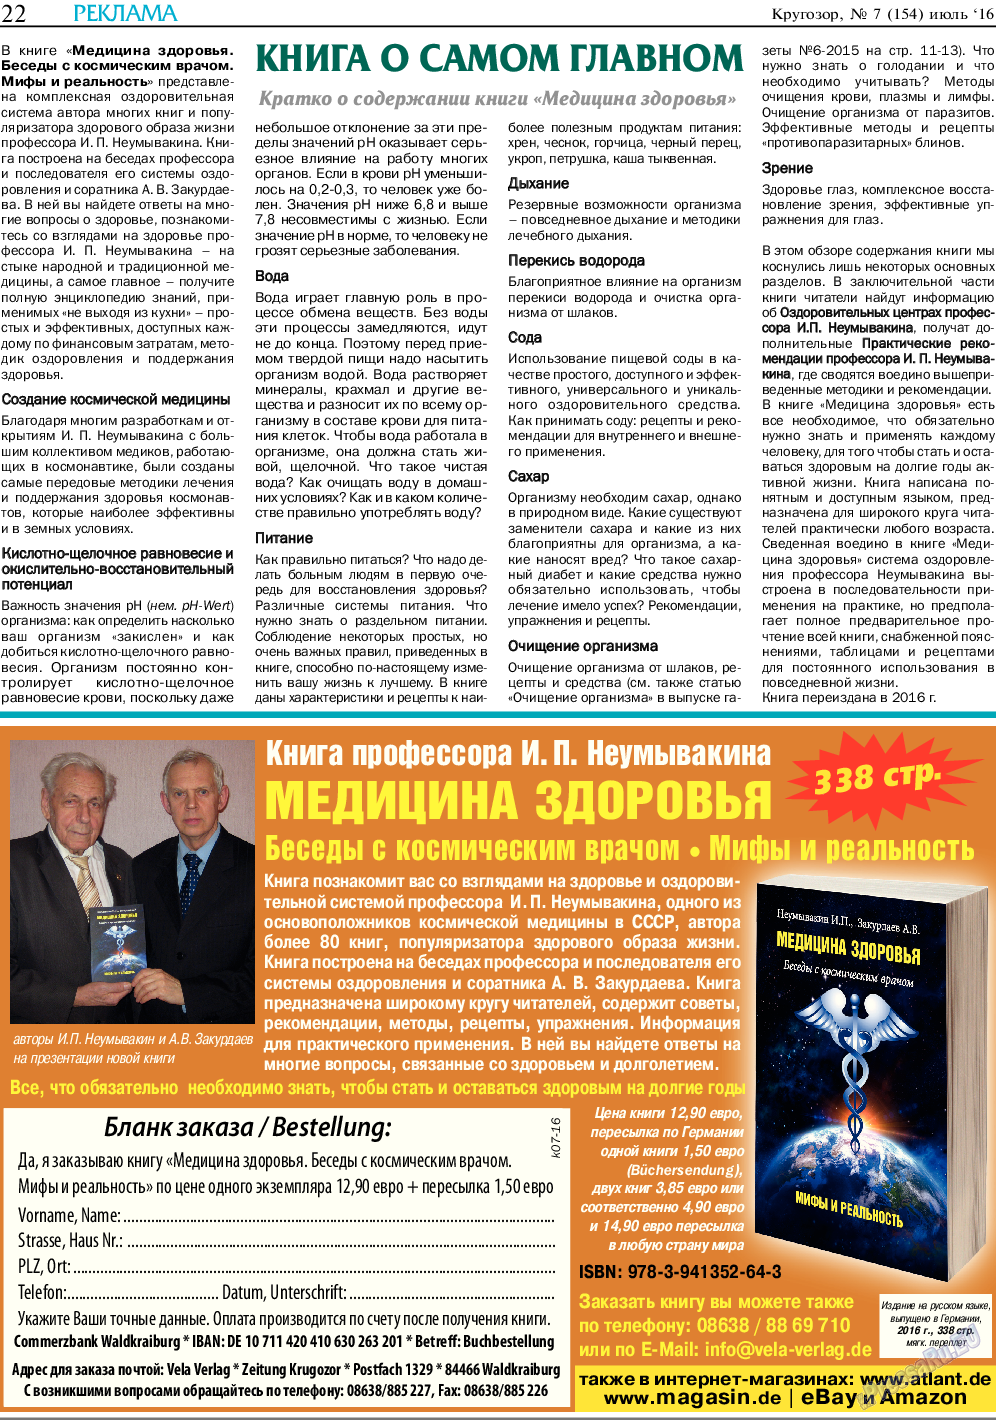 Кругозор, газета. 2016 №7 стр.22